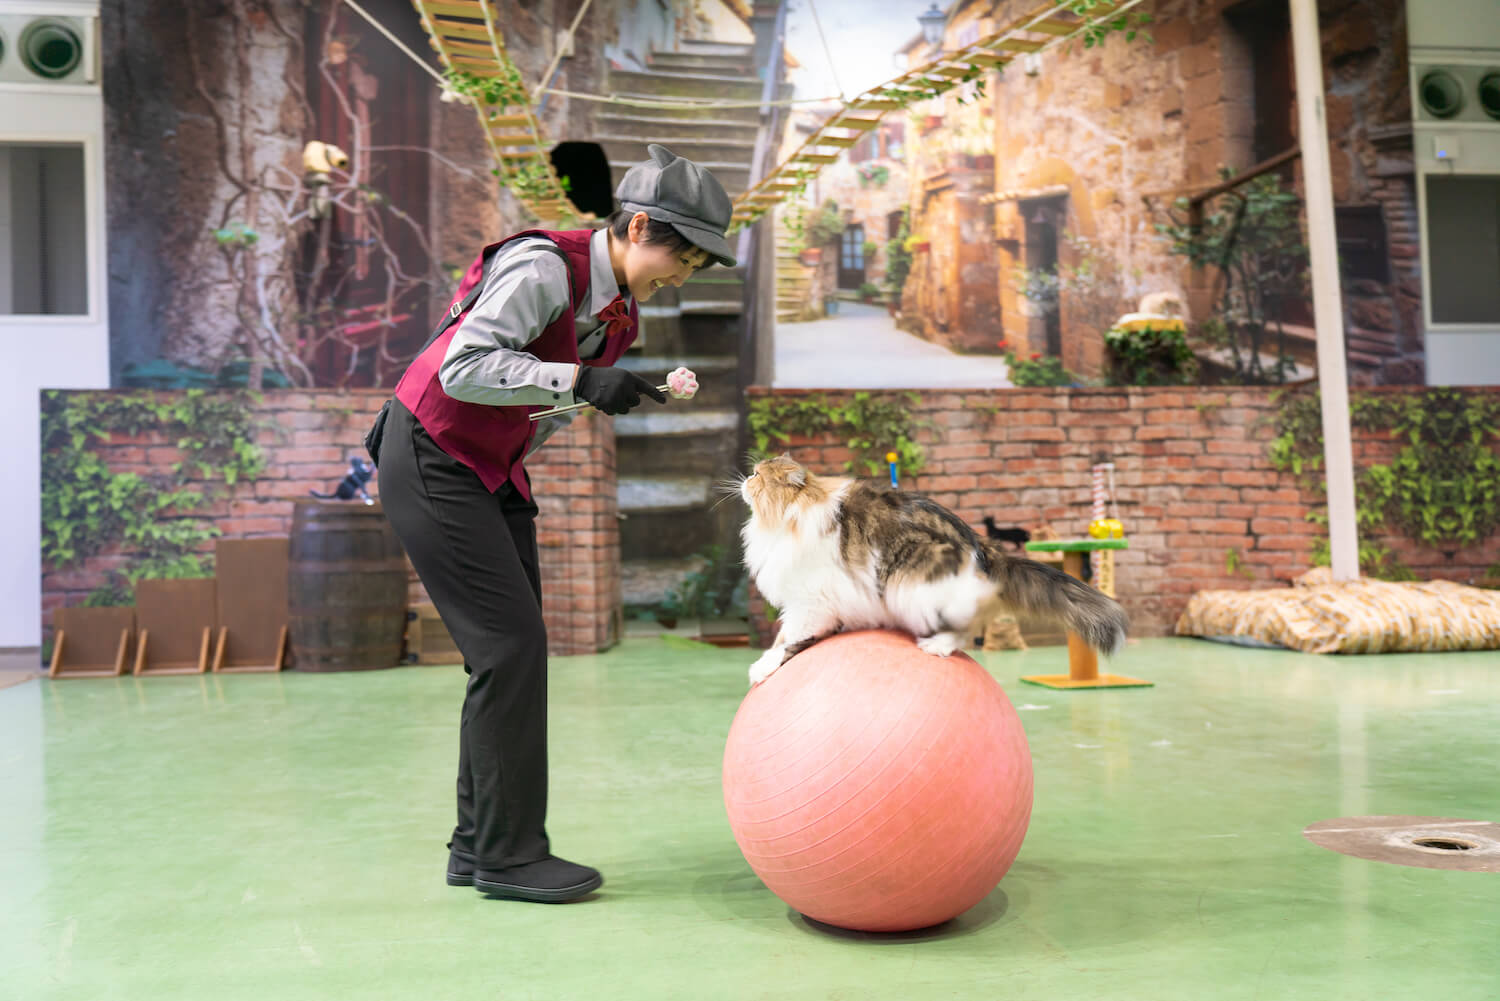 パフォーマンスショー「ザ・キャッツ」で玉乗りをする猫 by 那須どうぶつ王国